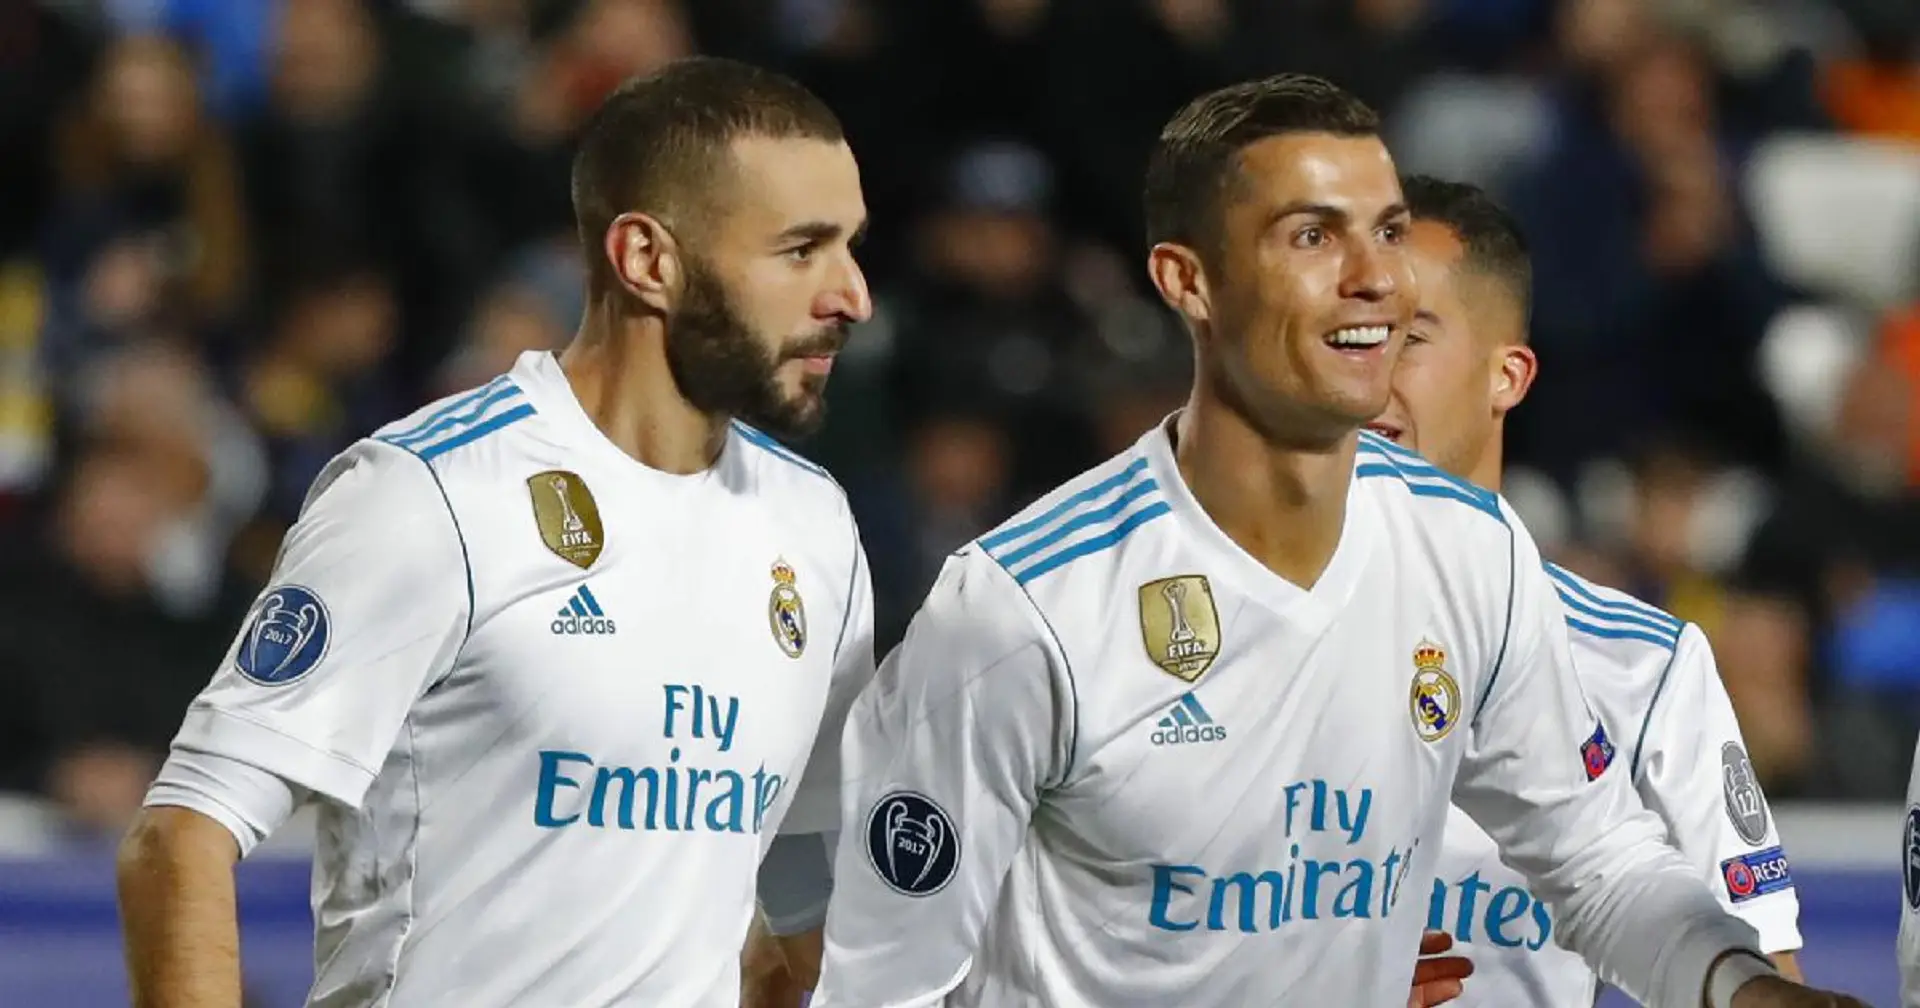 Ronaldo-Benzema son el segundo dúo más prolífico en asistencias de gol